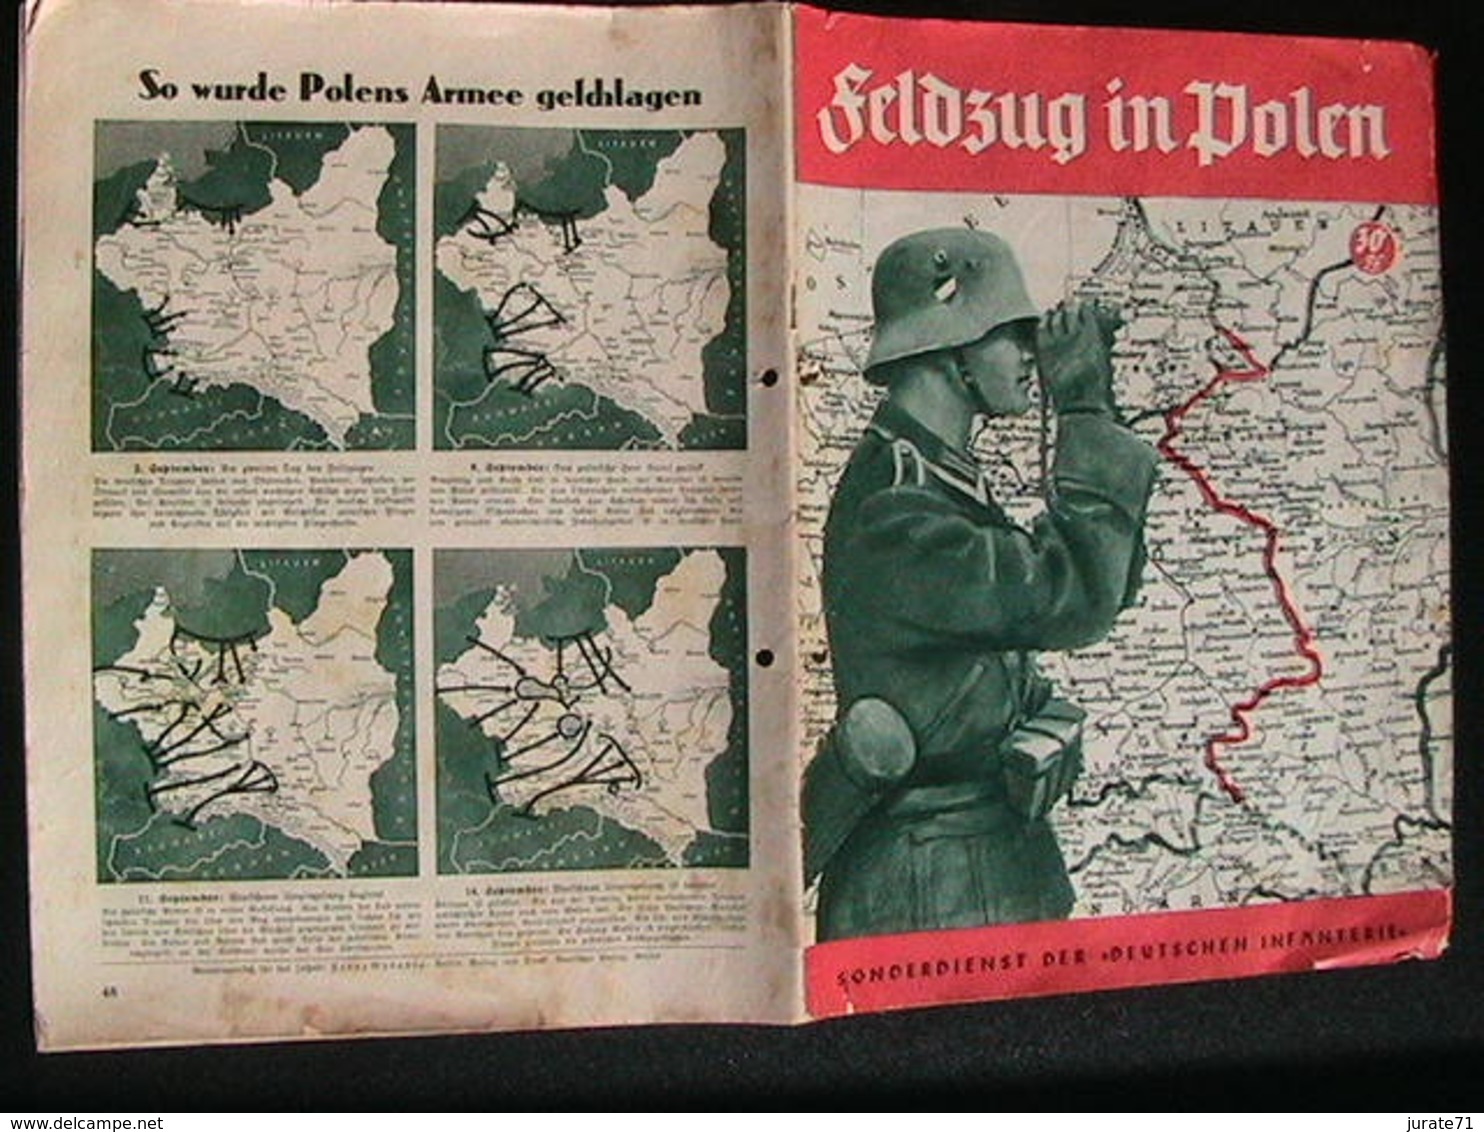 Feldzug in Polen, Sonderdienst des Deutschen Verlags, c.a. 1940